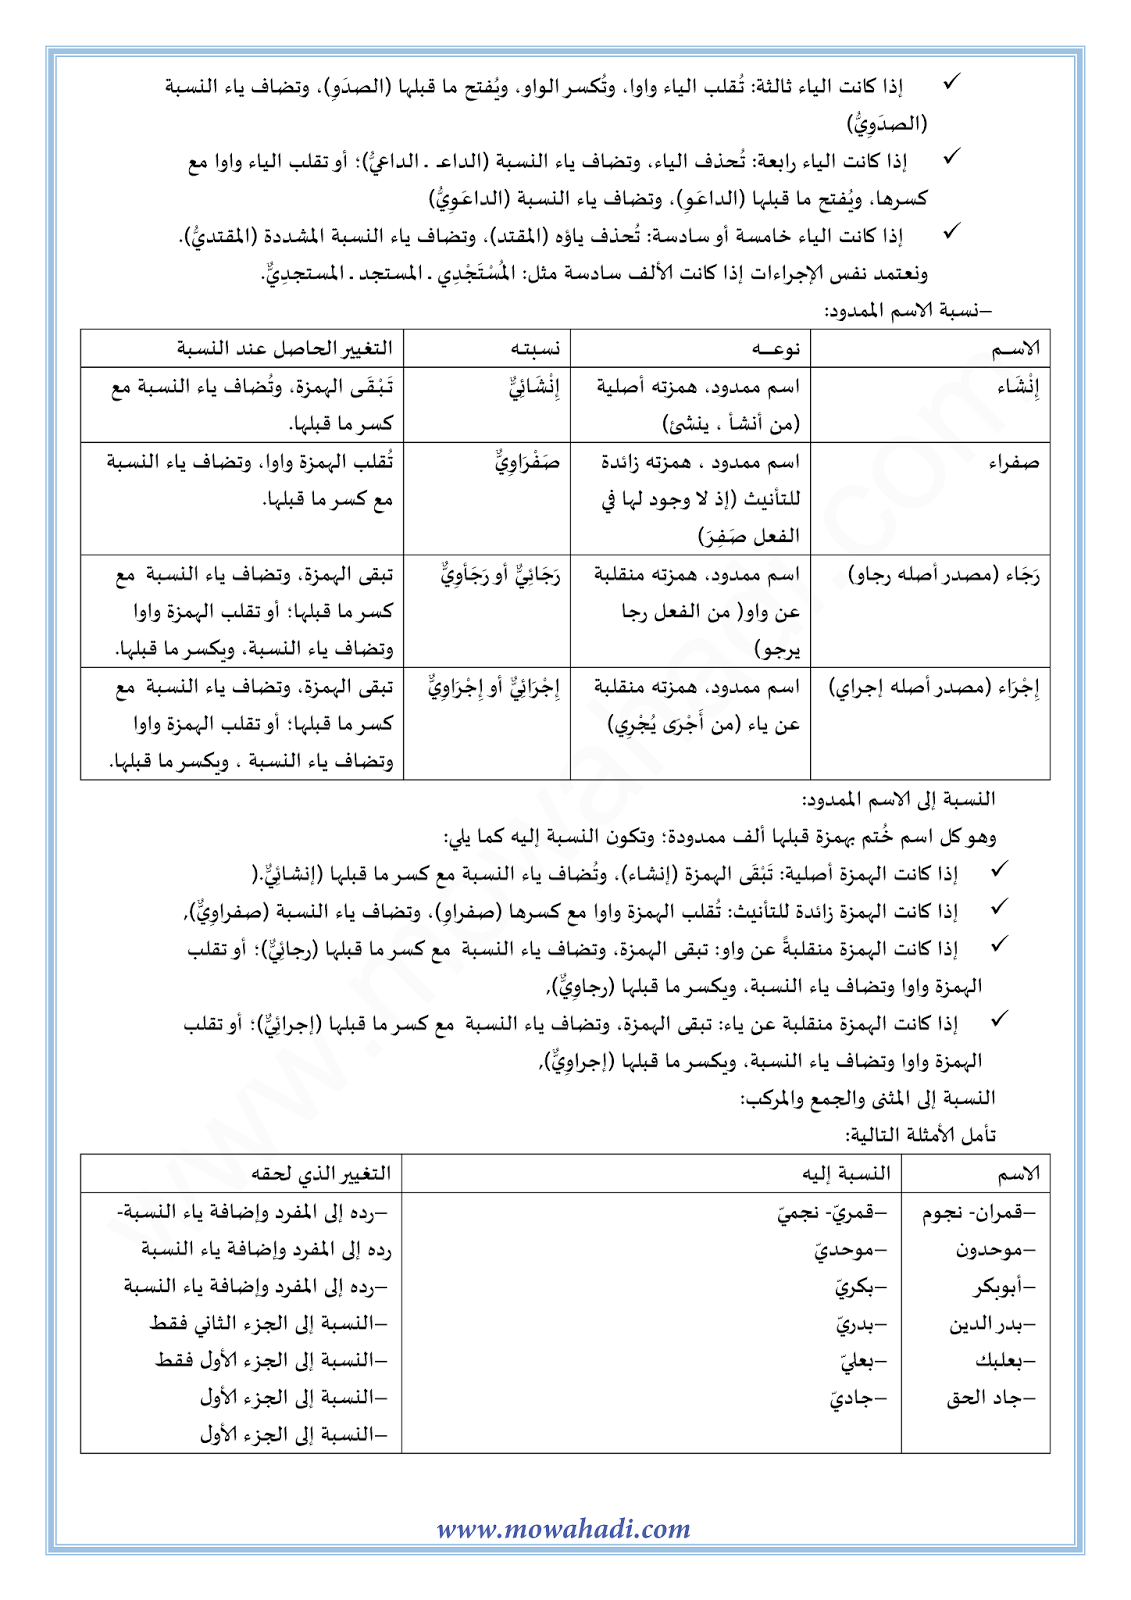 الدرس اللغوي النسبة للسنة الثالثة اعدادي في مادة اللغة العربية 5-cours-dars-loghawi3_003